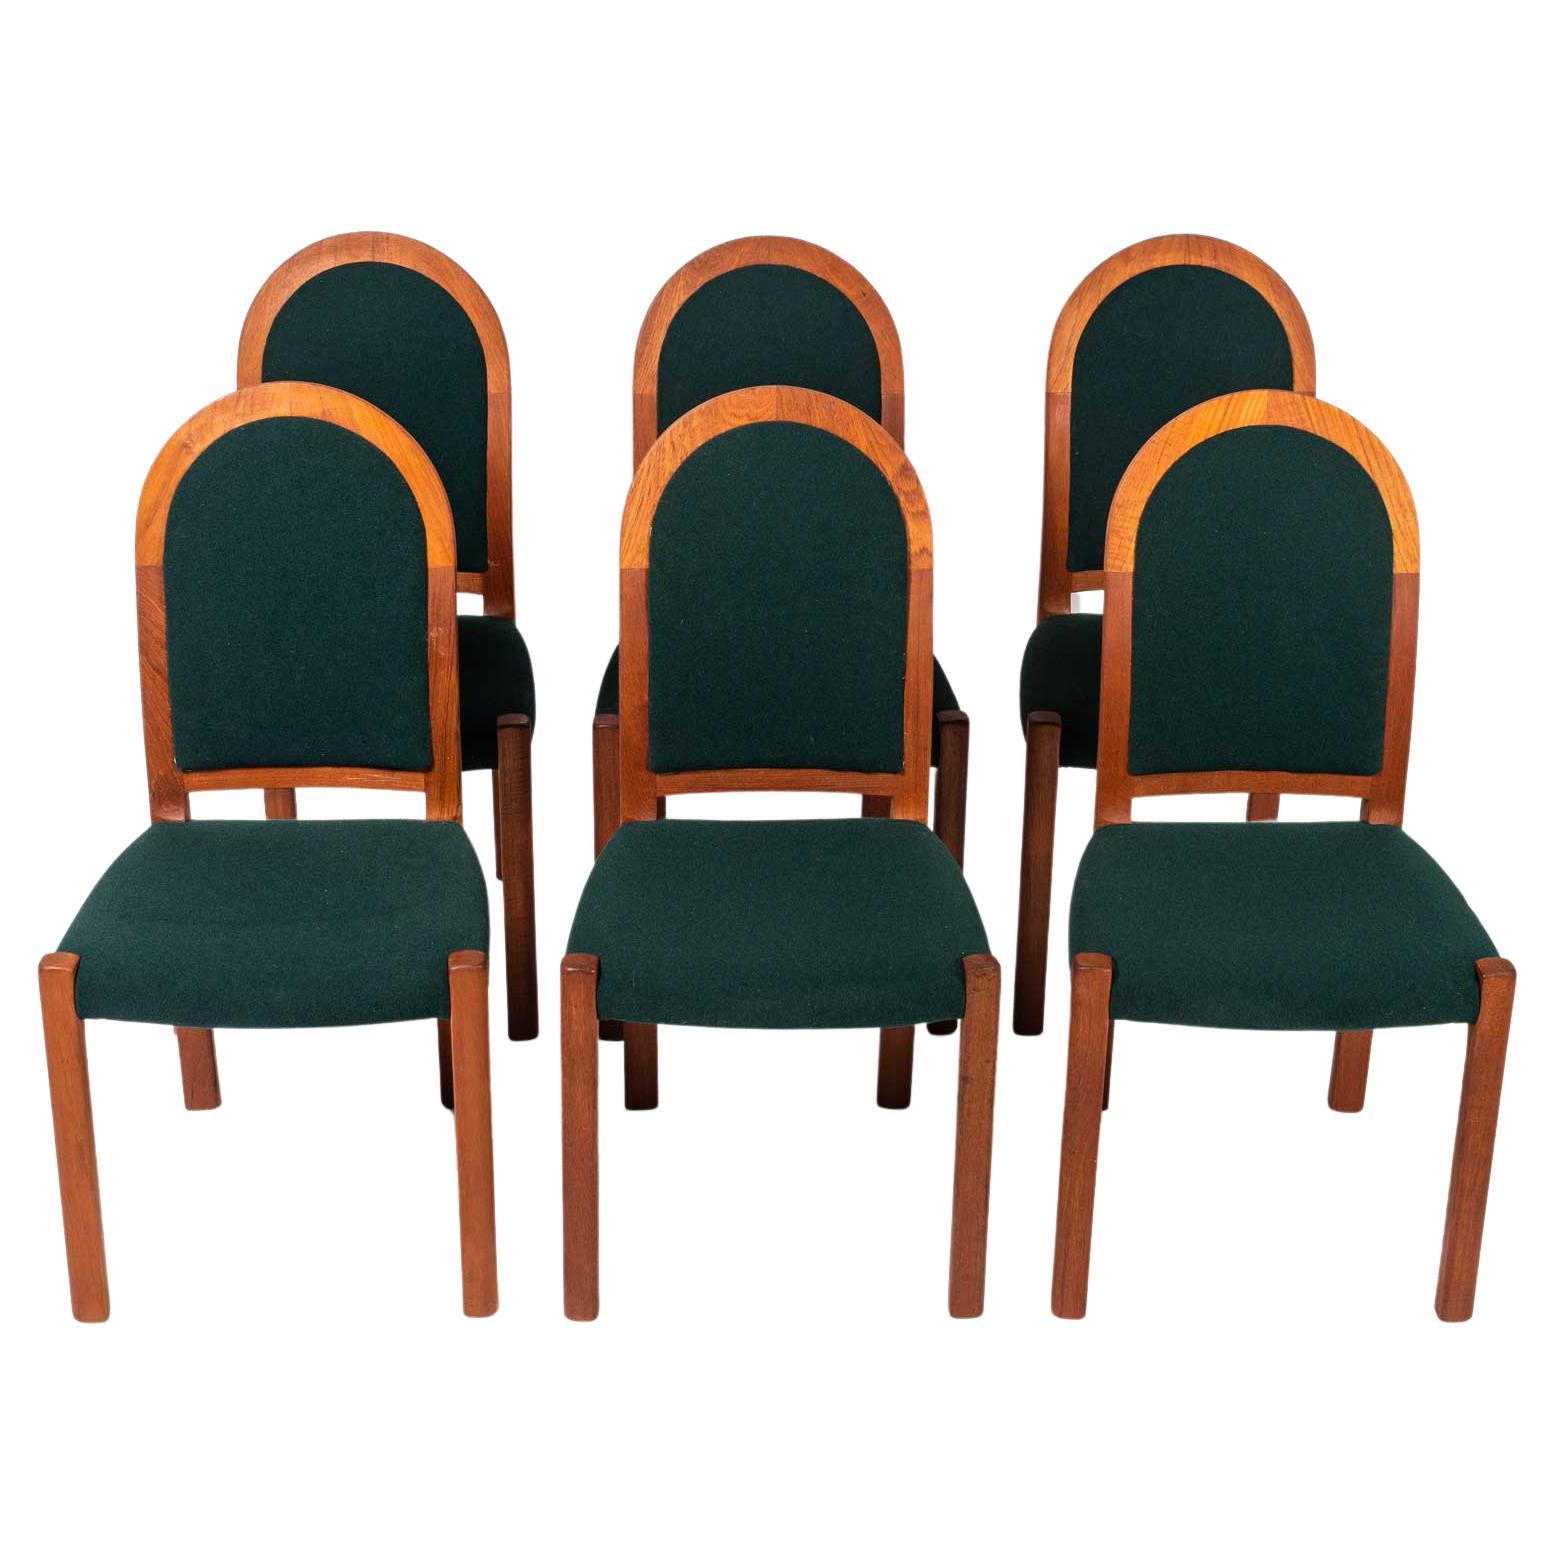 Six Moller 311 Side Chair in Teak & Winter Green Wool